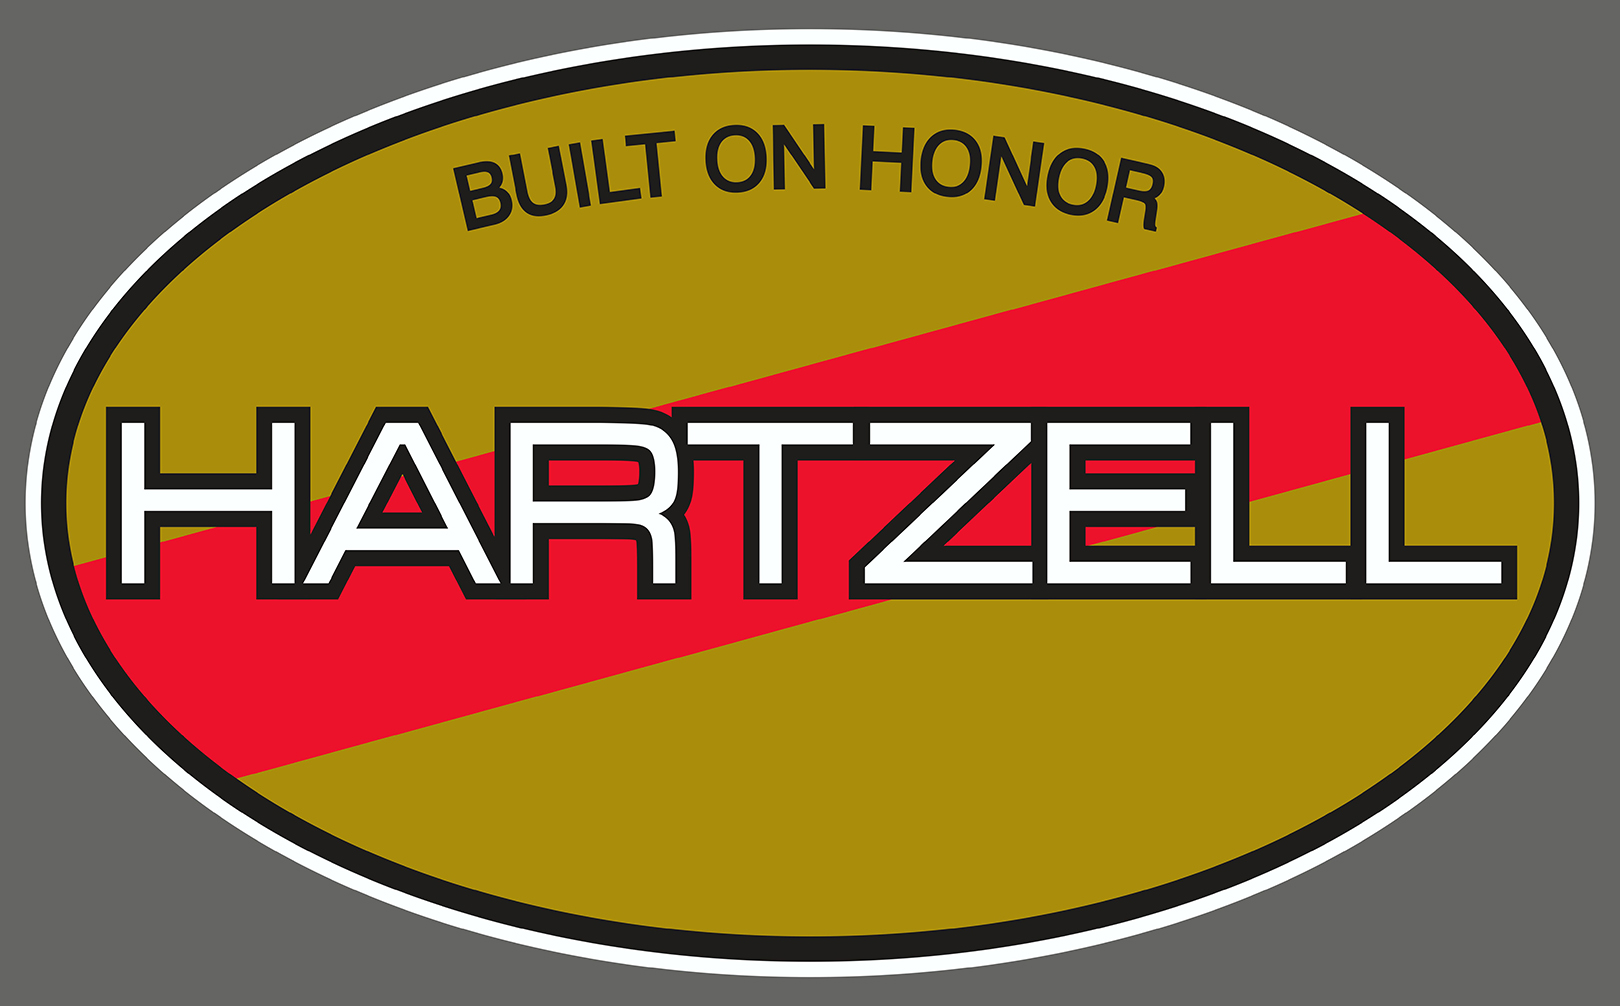 Hartzell Precision Propeller Service